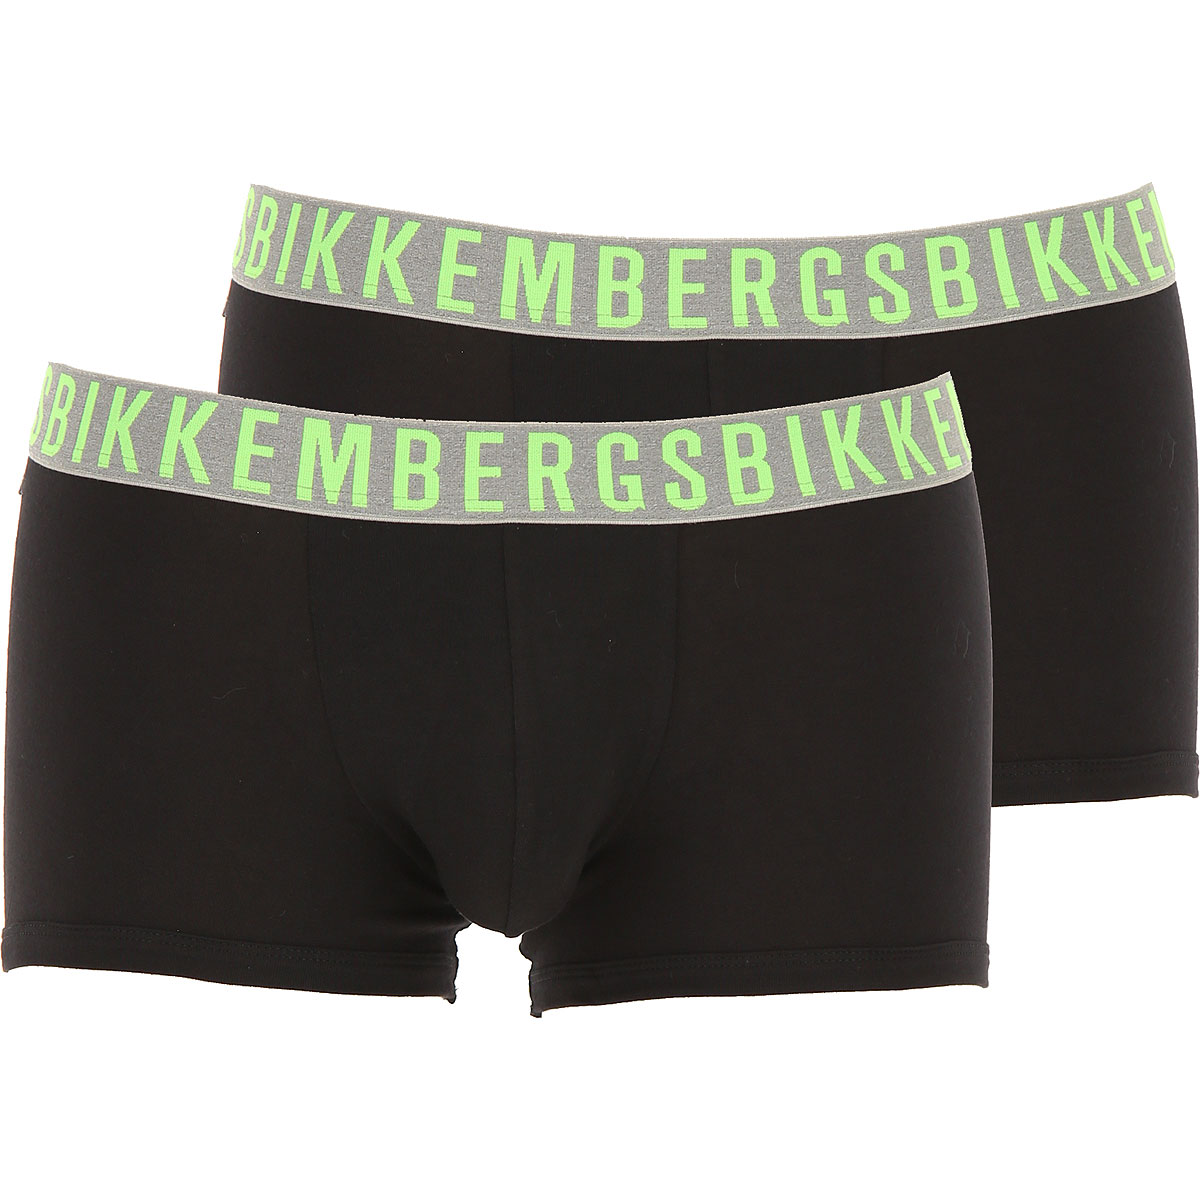 Dirk Bikkembergs Boxer Shorts für Herren, Unterhose, Short, Boxer Günstig im Sale, 2 Pack, Schwarz, Baumwolle, 2017, L M S XL